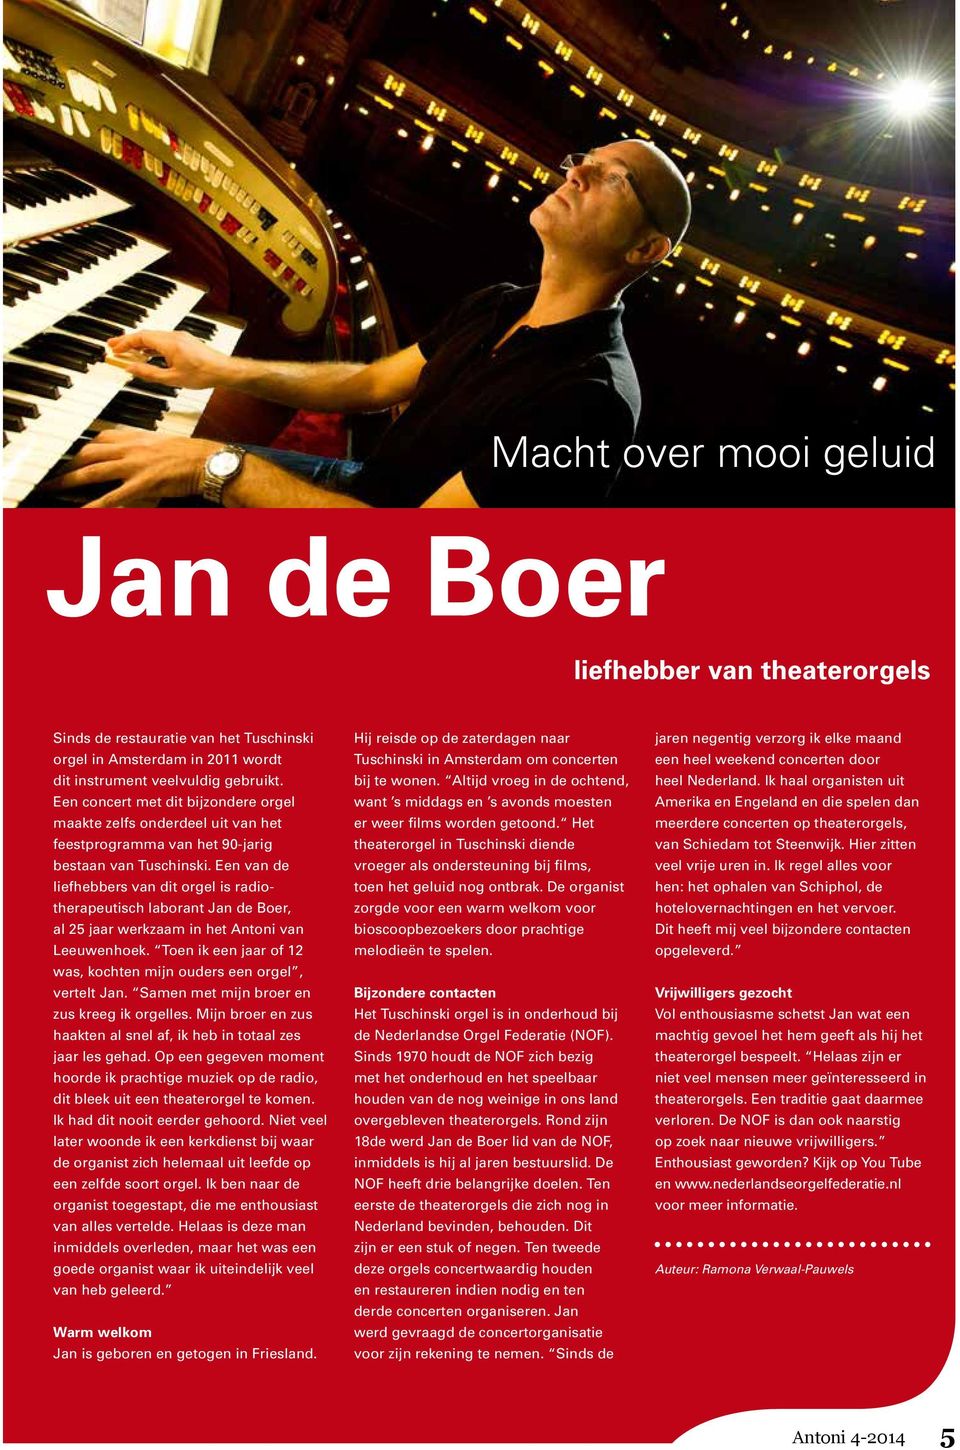 Een van de liefhebbers van dit orgel is radiotherapeutisch laborant Jan de Boer, al 25 jaar werkzaam in het Antoni van Leeuwenhoek.